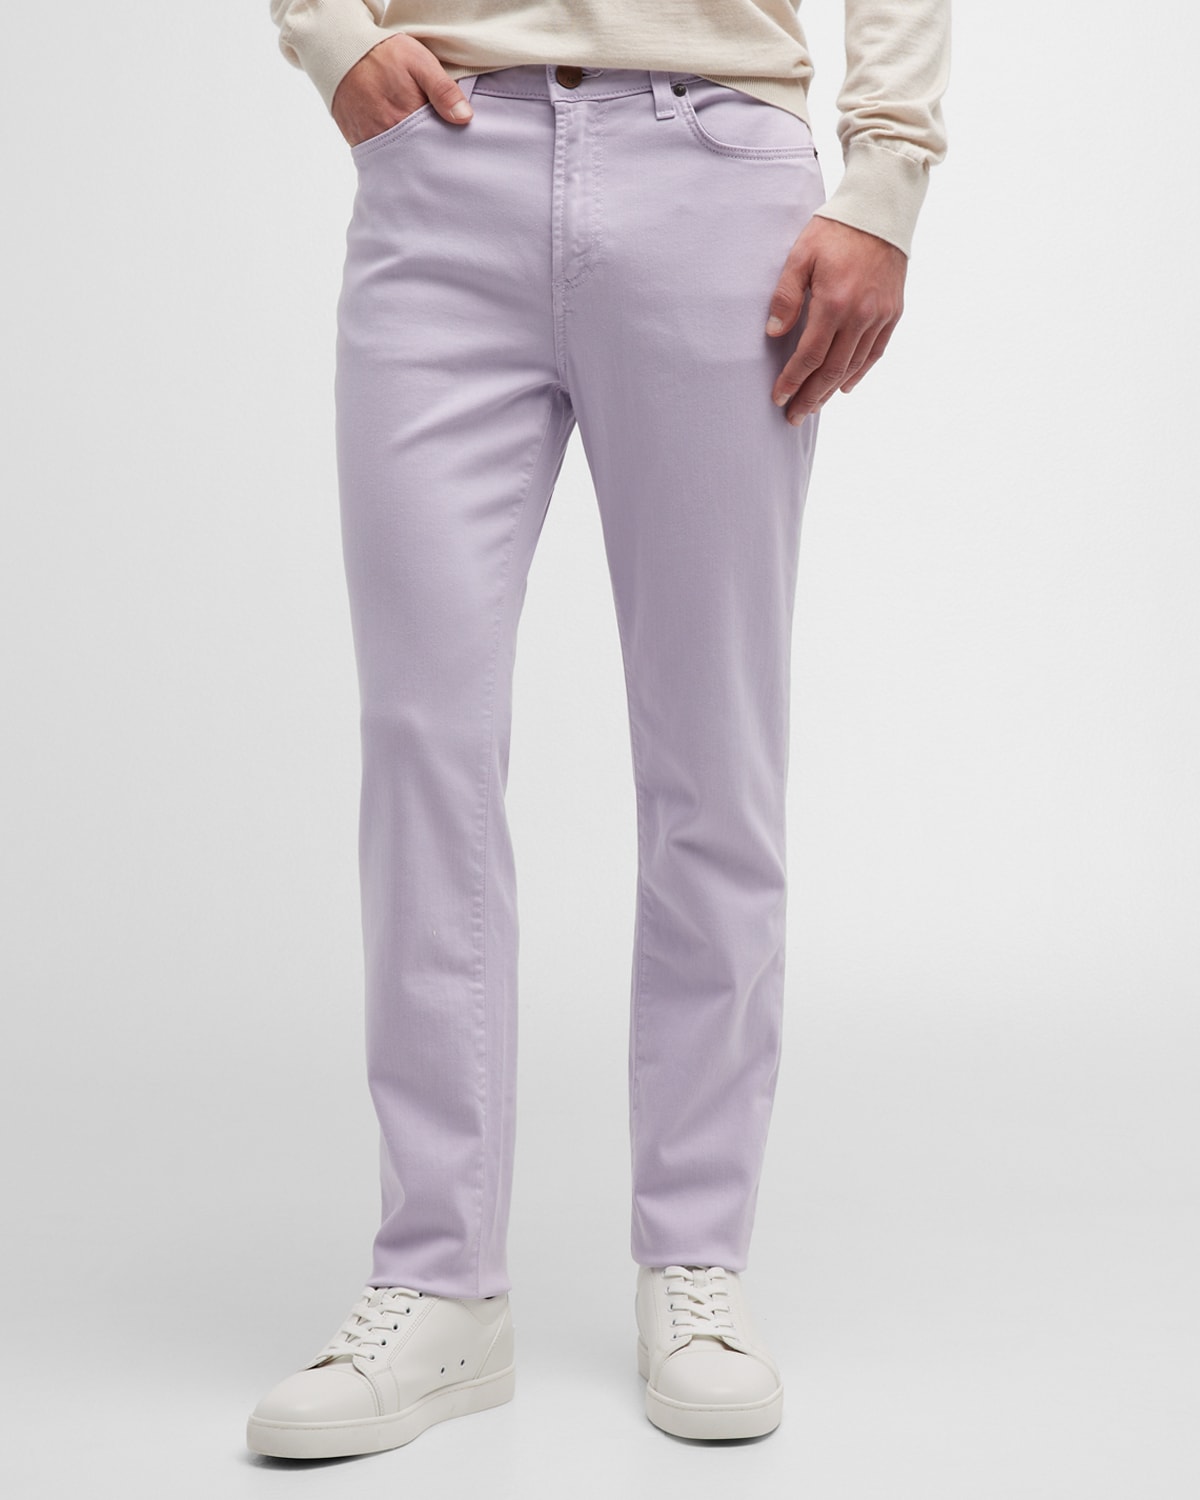 Men's Brando Slim-Fit Denim Jeans